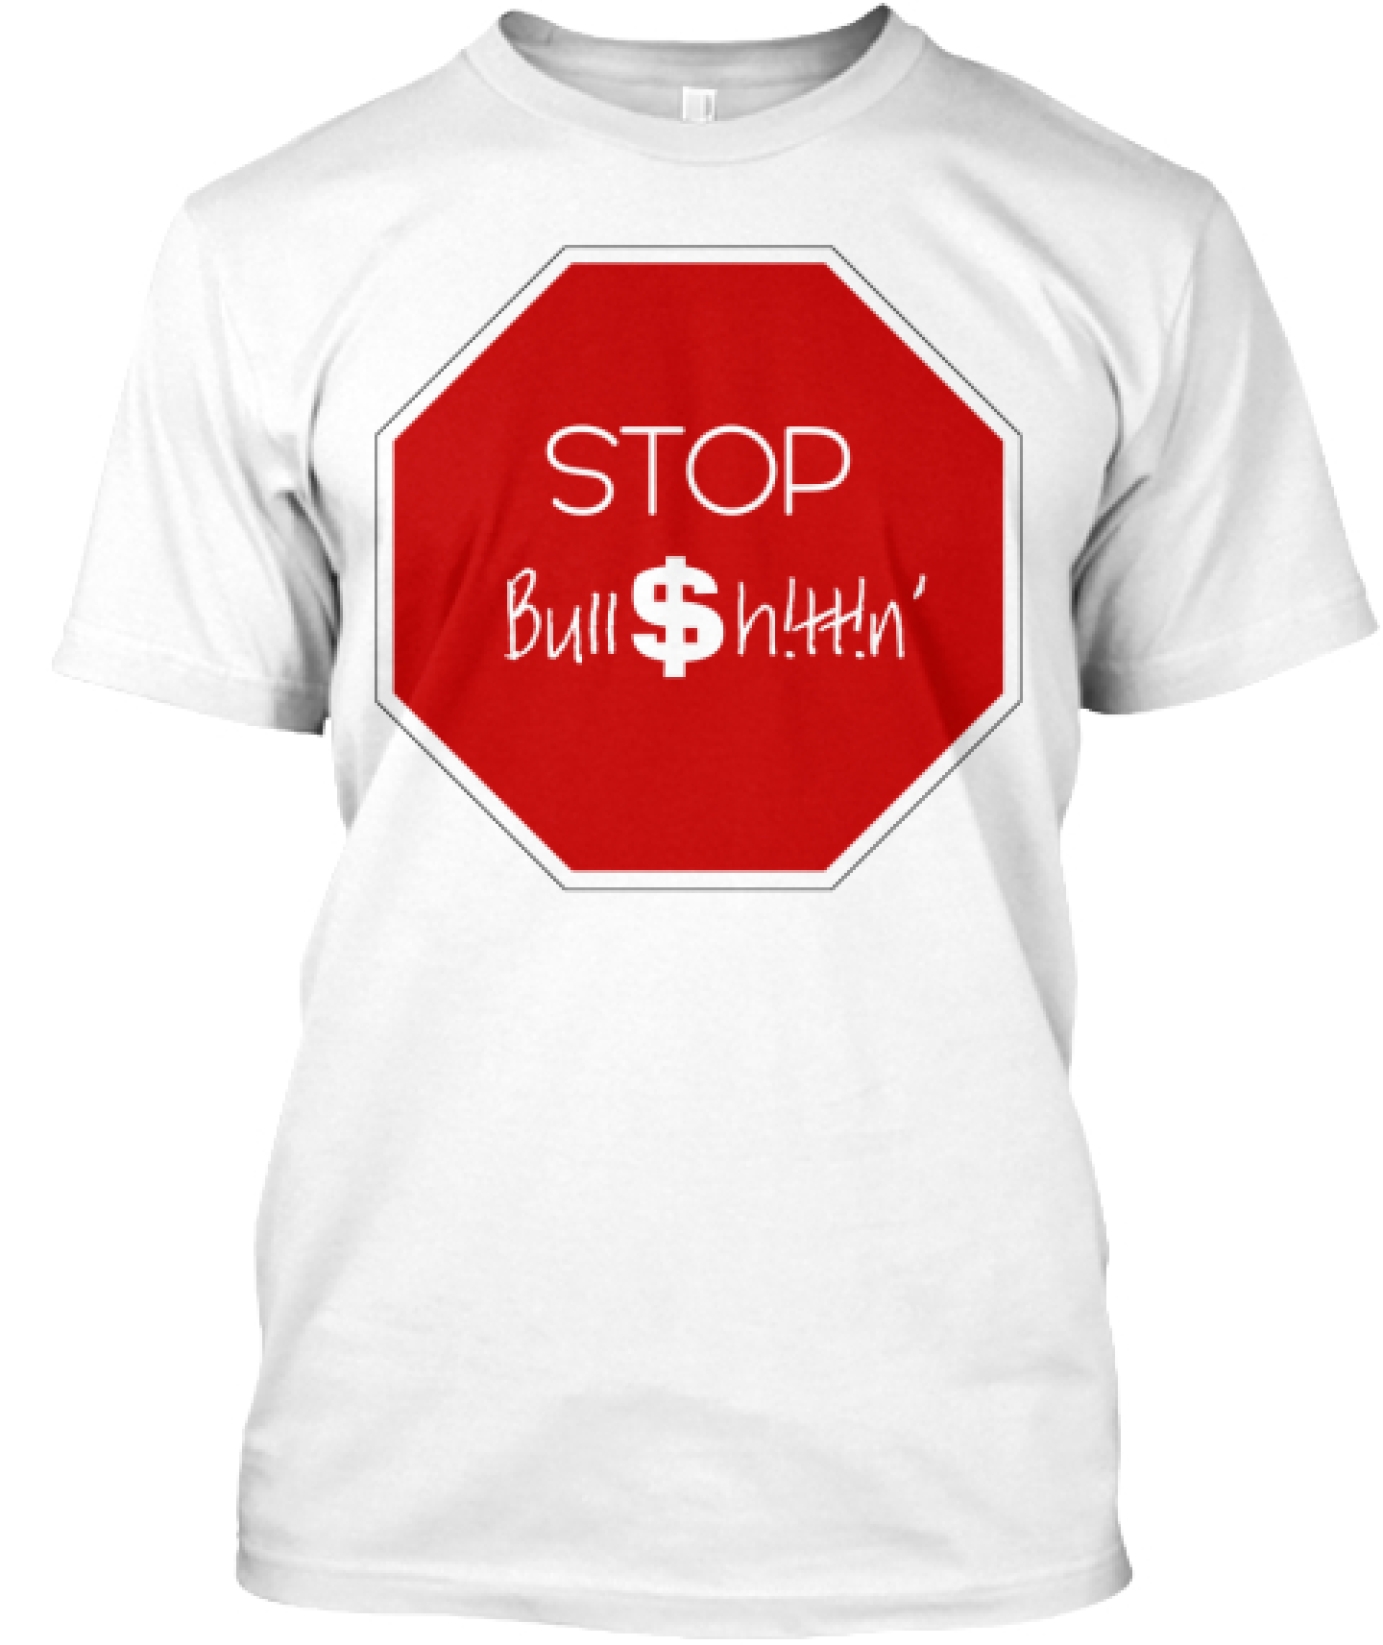 Stop Bull$h!tt!n'